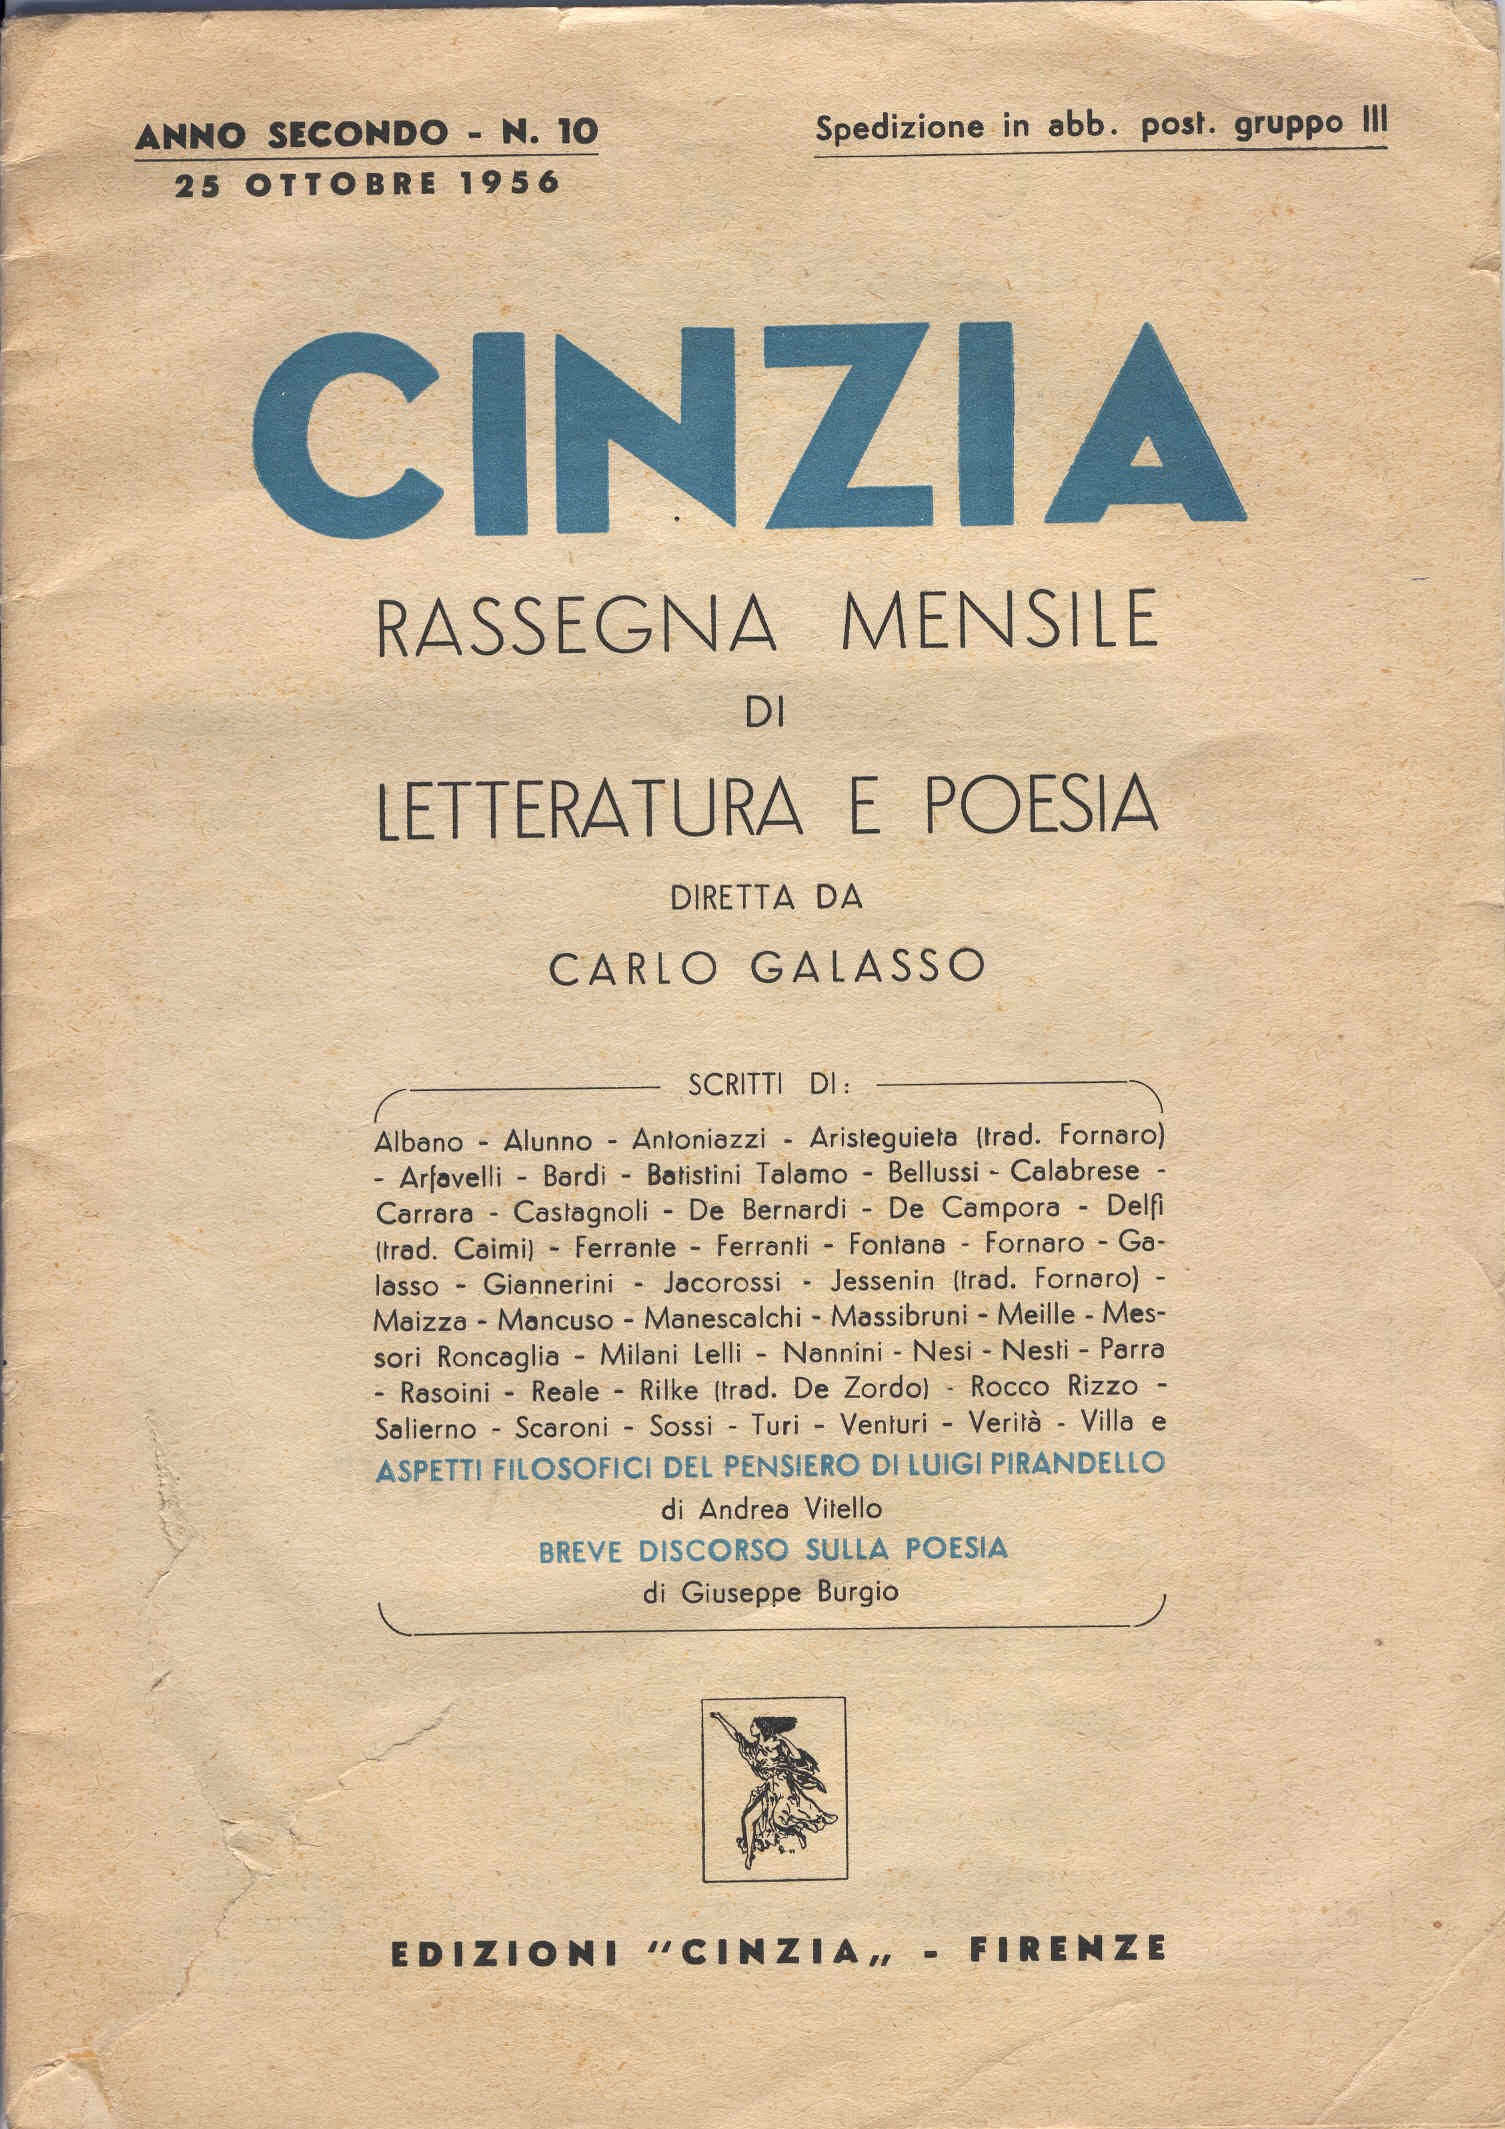 1 cinzia 1956